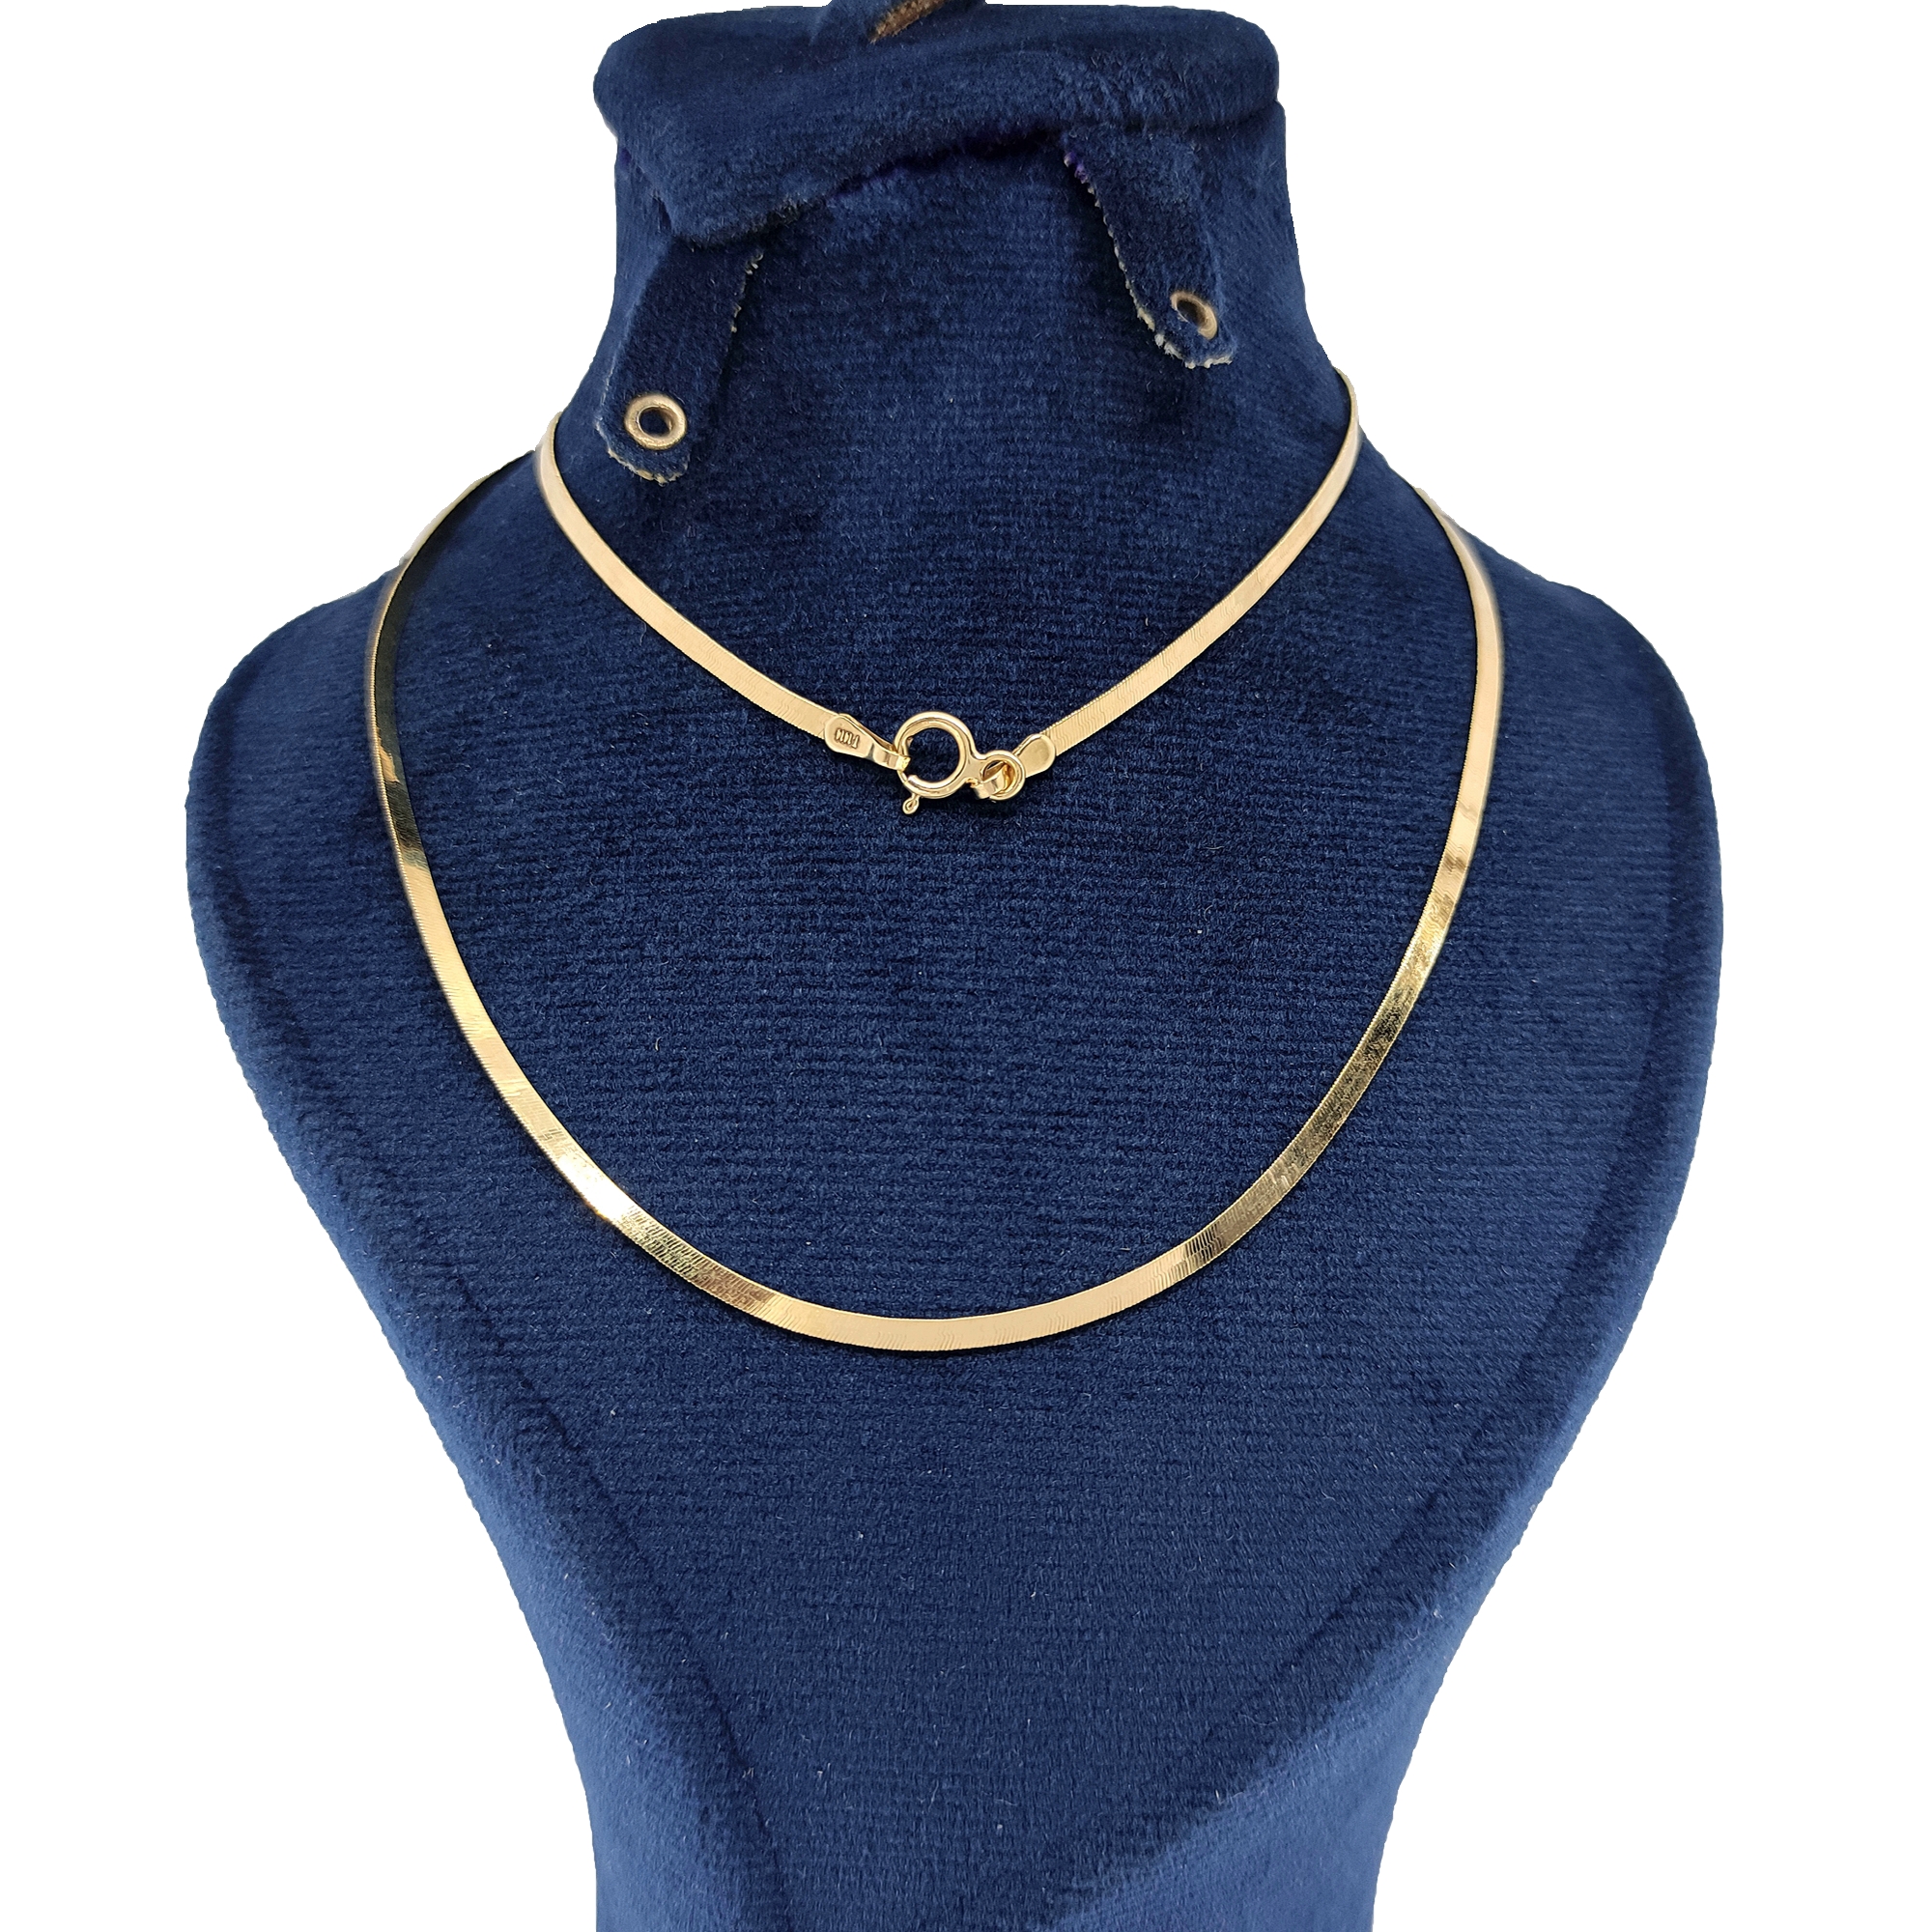 زنجیر طلا 18 عیار زنانه طلا و جواهرسازی افرا مدل هرینگ بون 282252